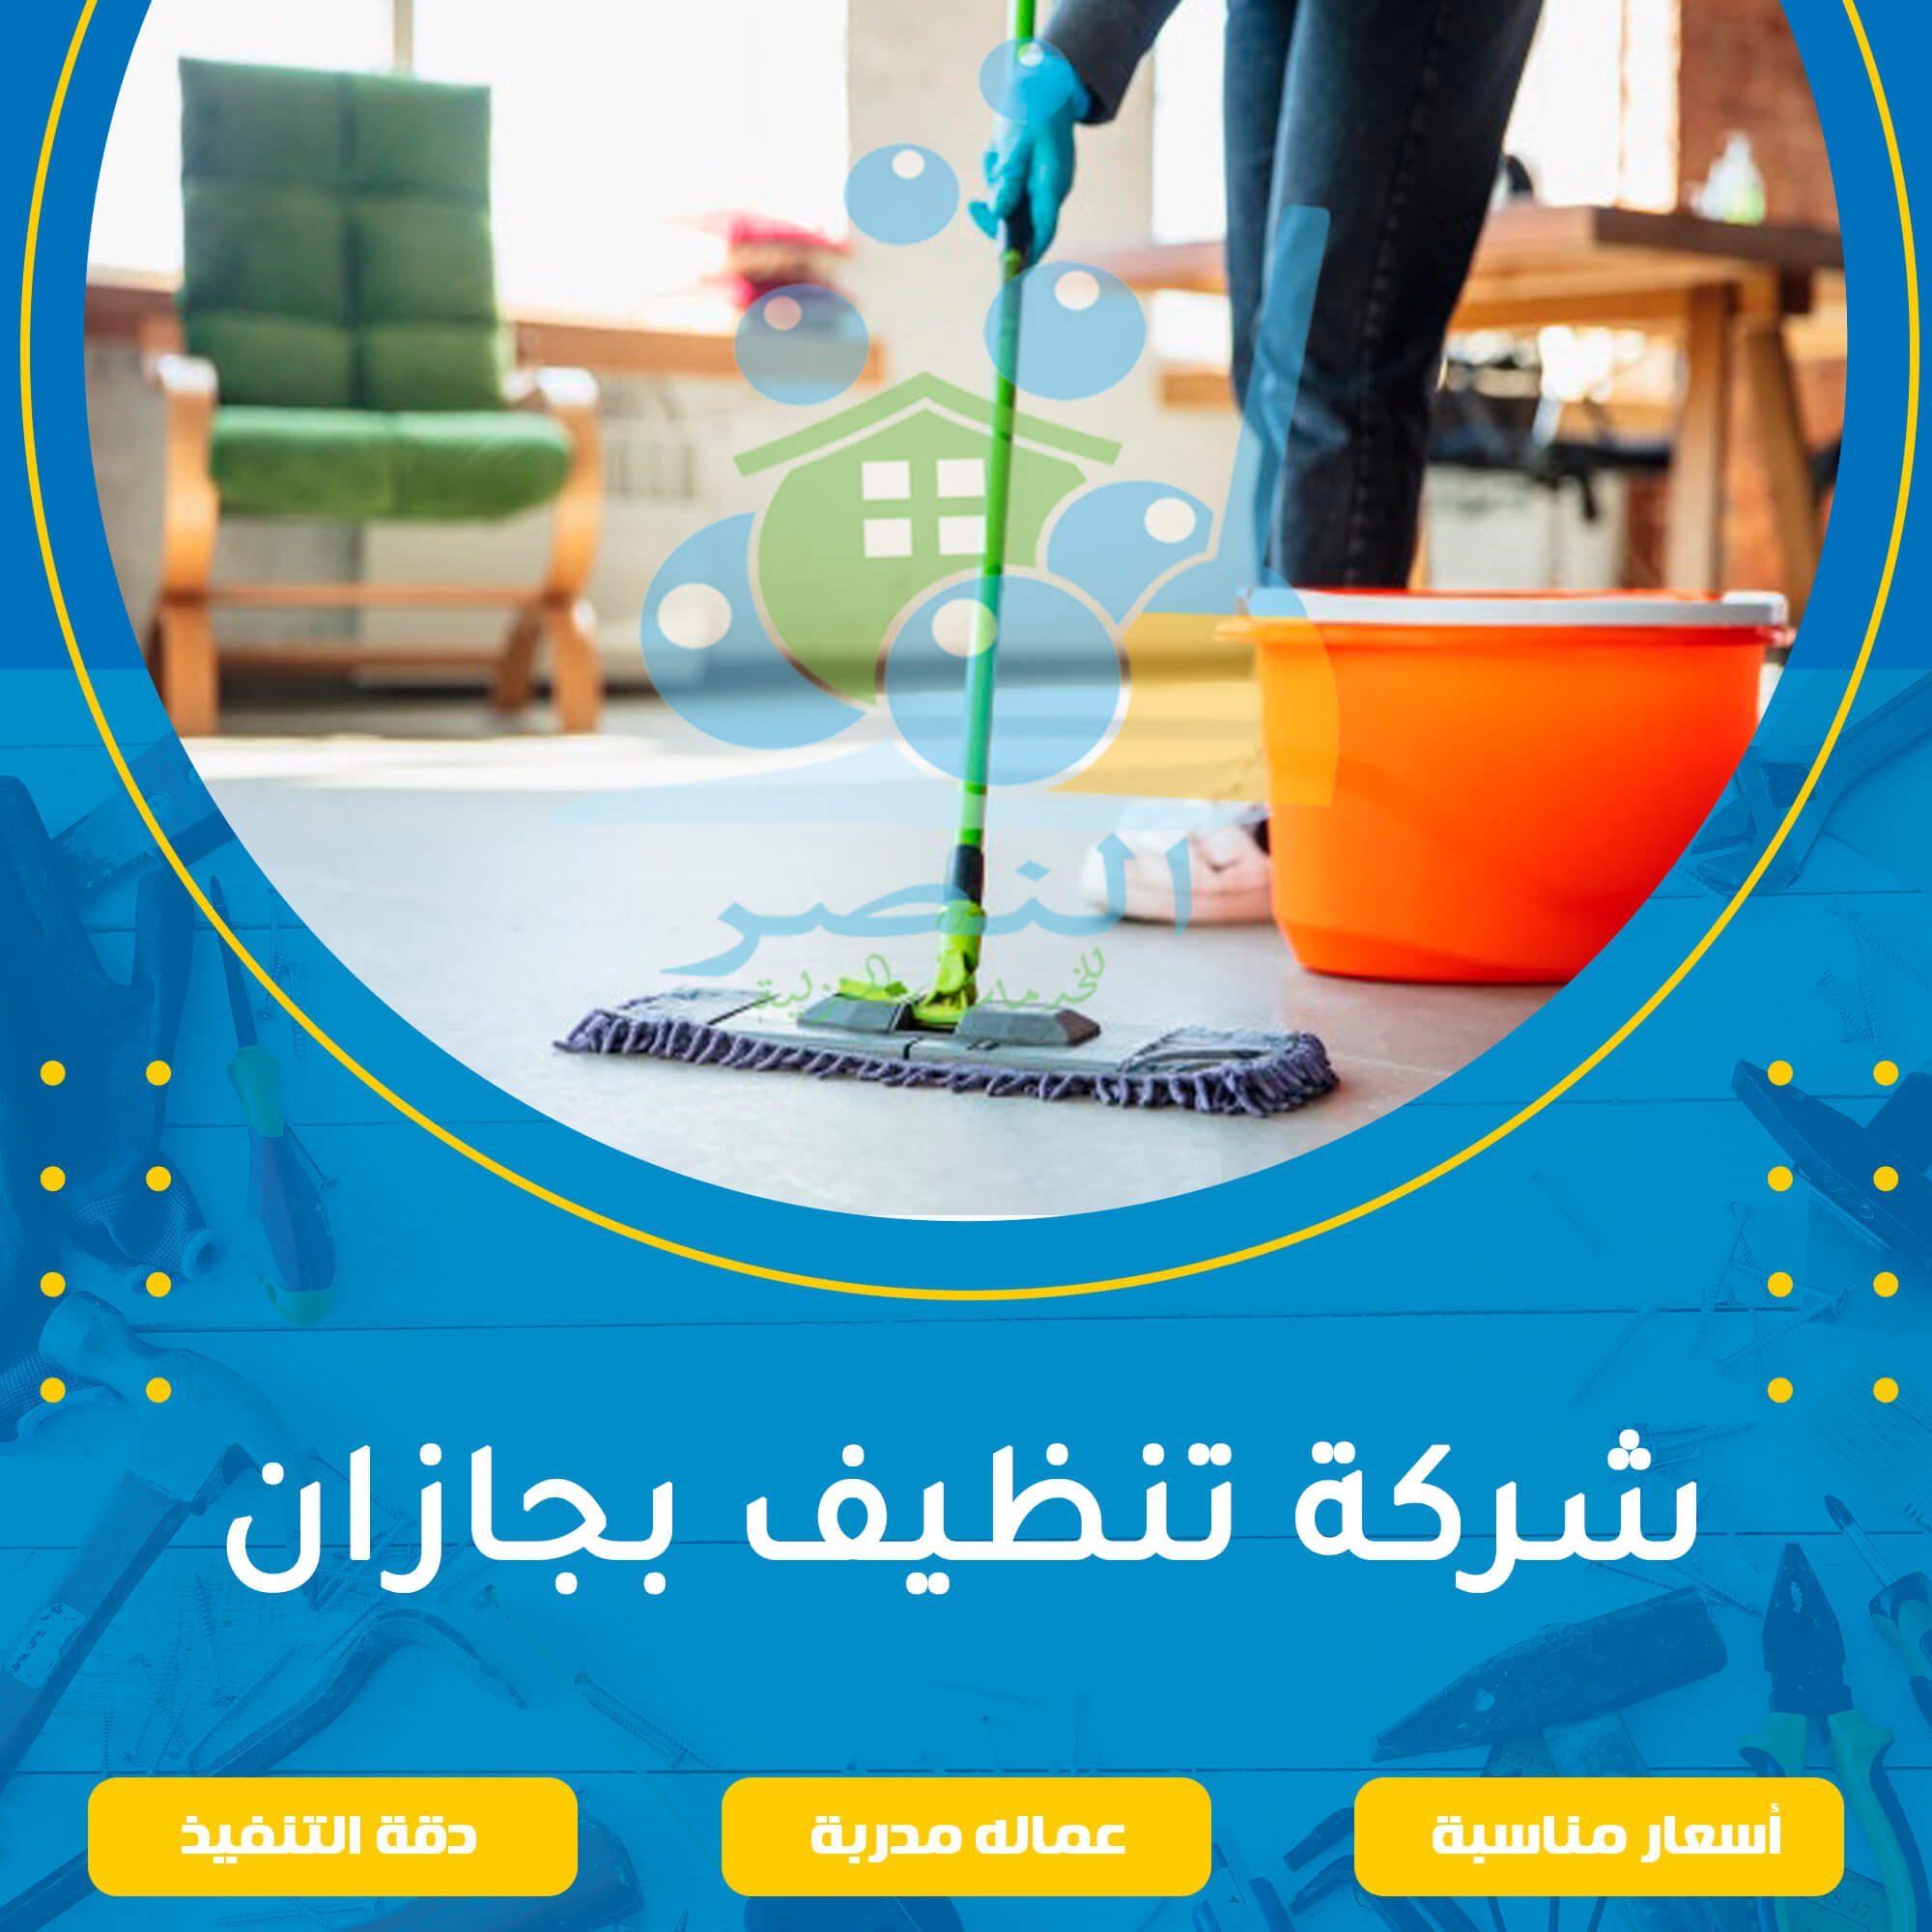 شركة تنظيف بجازان 0554214158 اتصل الان شركة النصر